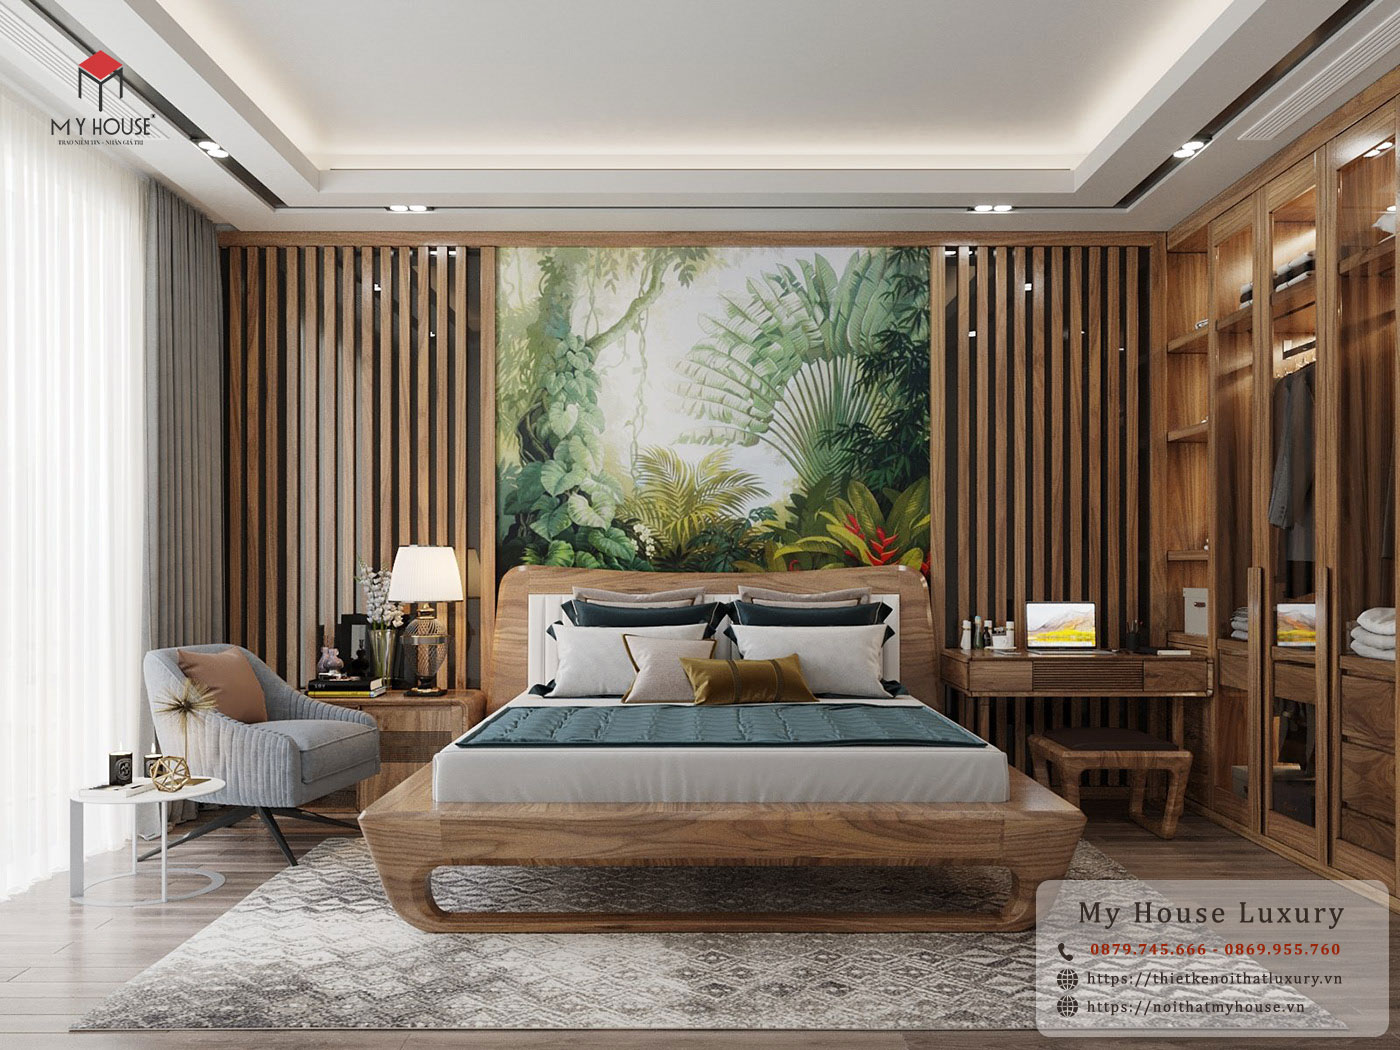 Nội thất được làm từ gỗ đảm bảo độ bền cao và mang đến sự sang trọng, đẳng cấp cho không gian phòng ngủ